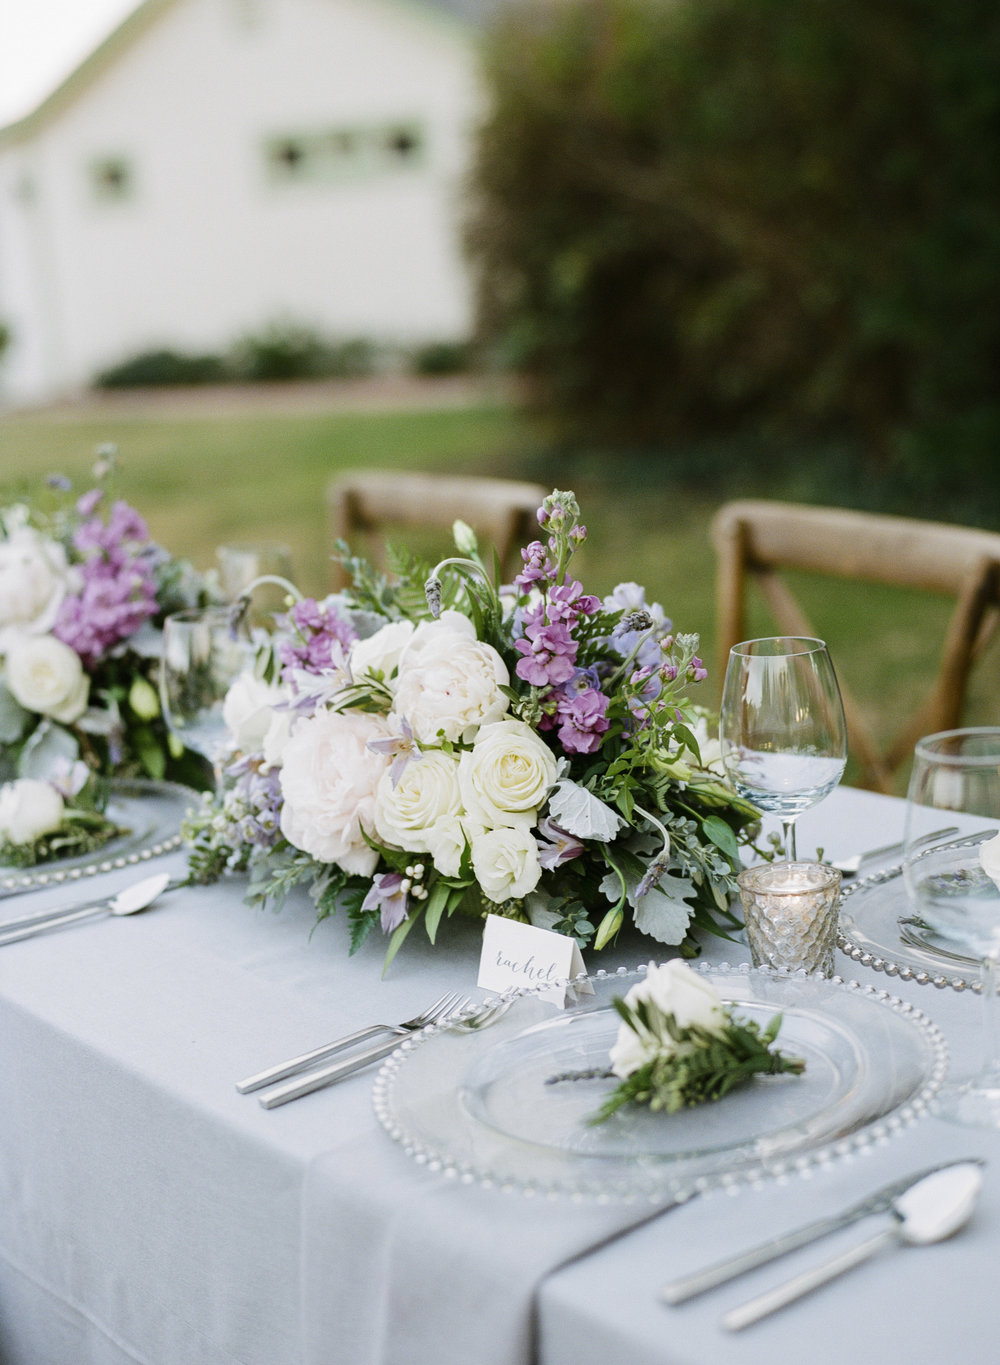 Violette-fleurs-roseville-sacramento-california-Flower-farm-inn-wedding-florist-spring-tablescape-lavenders-ivories-grays.jpg